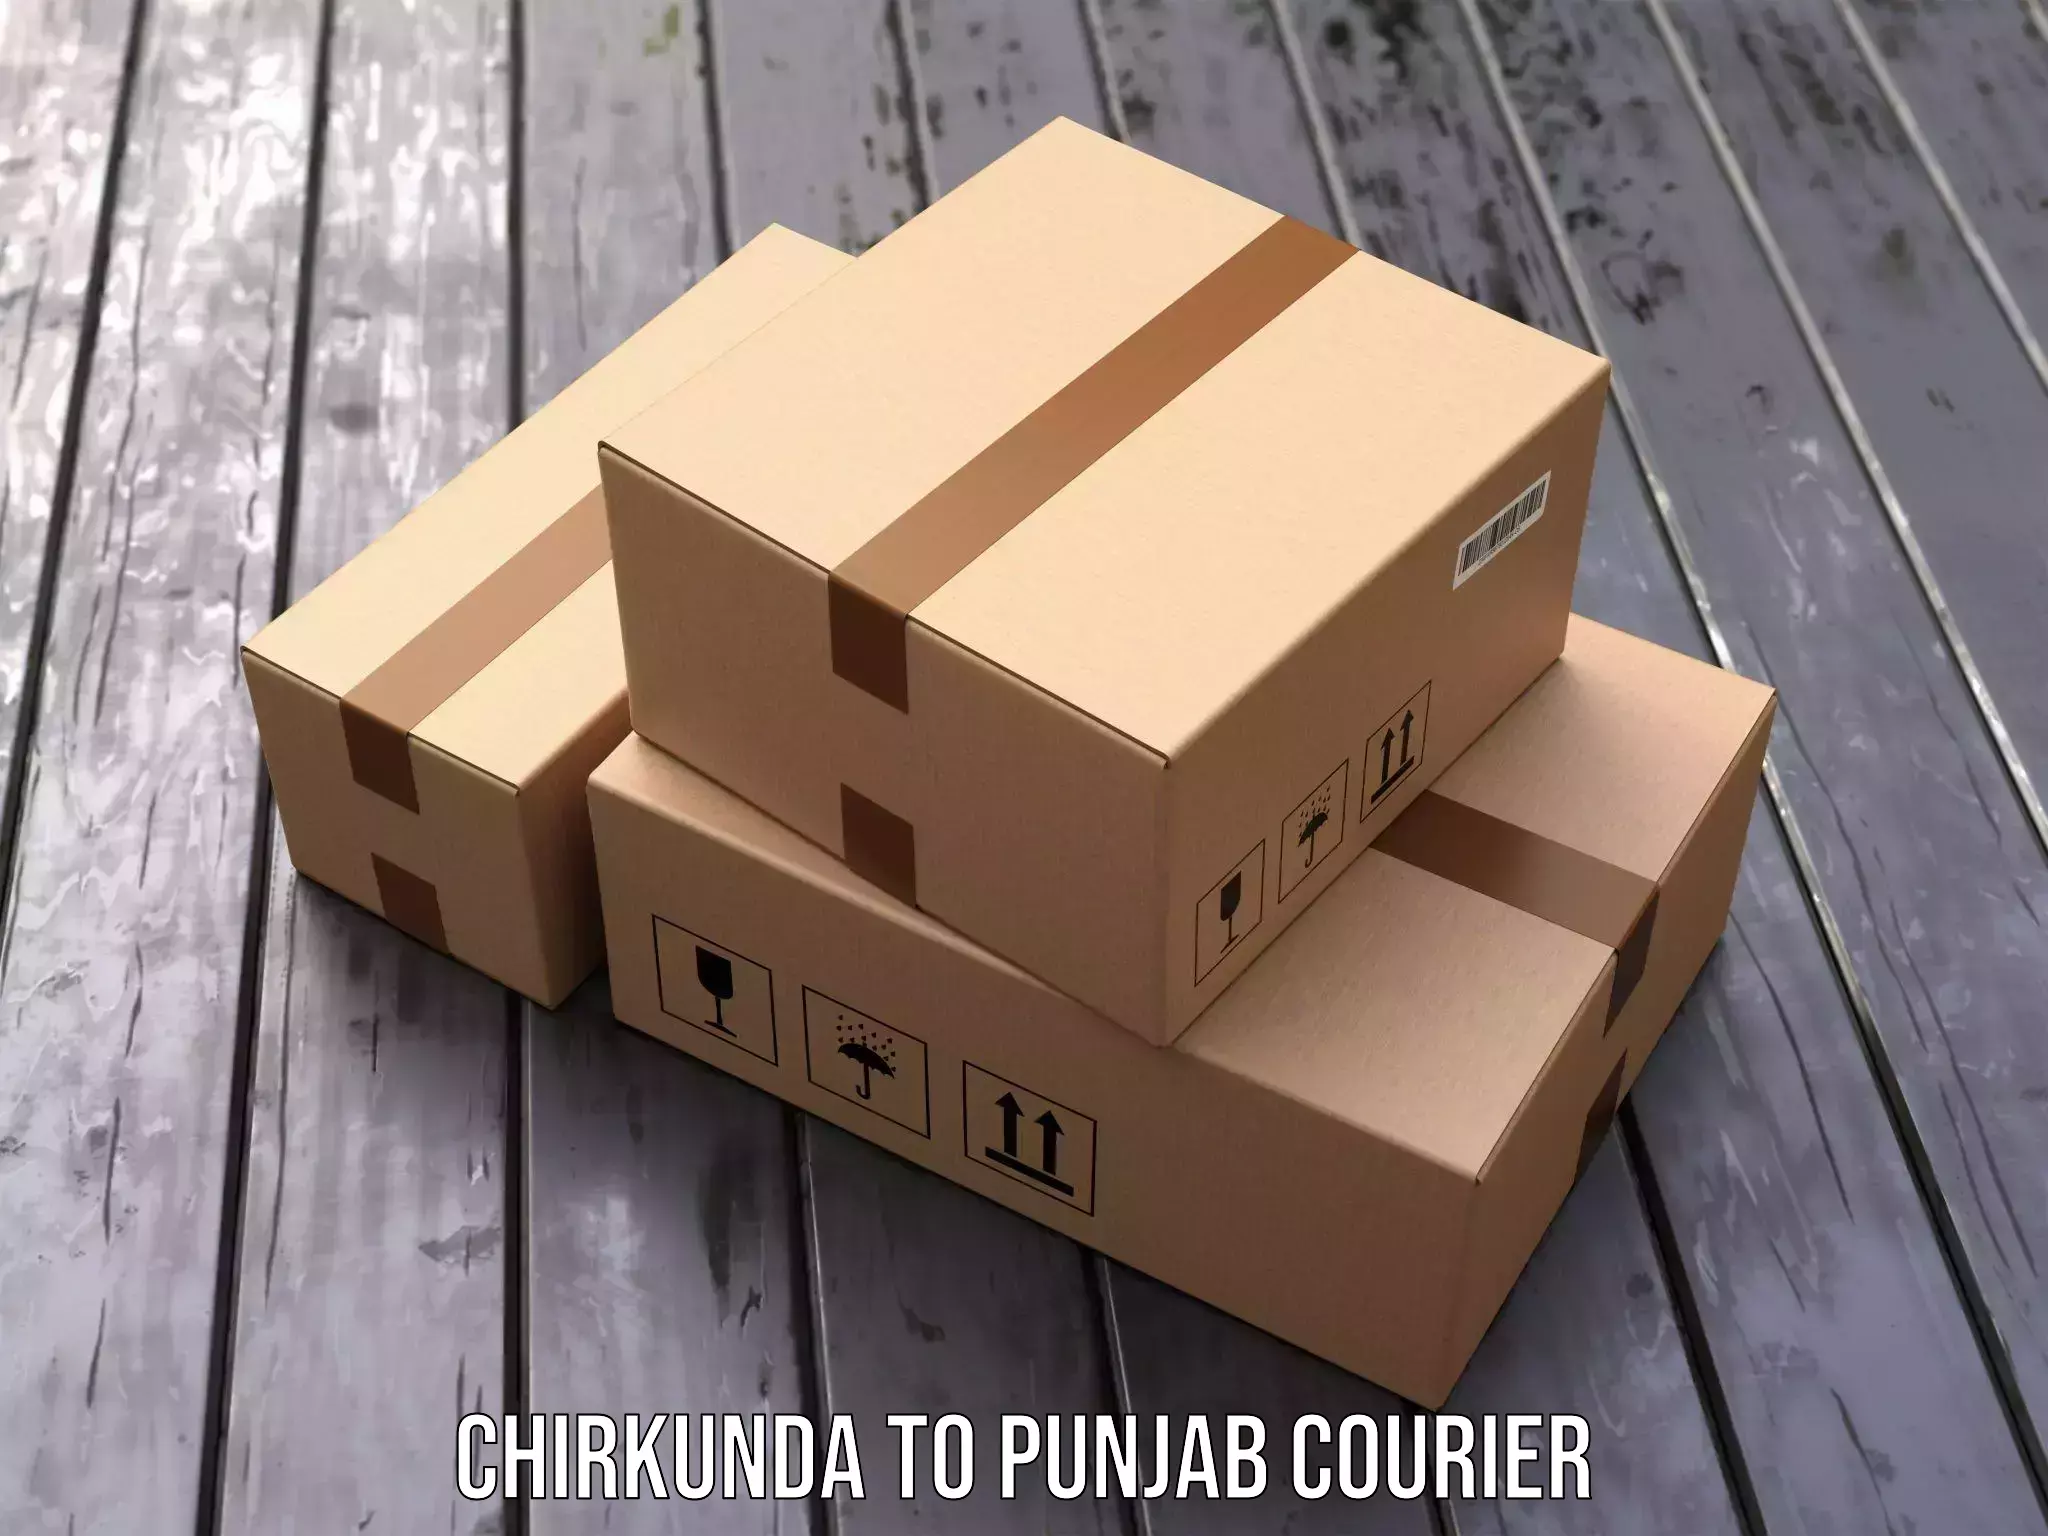 Pharmaceutical courier Chirkunda to Punjab